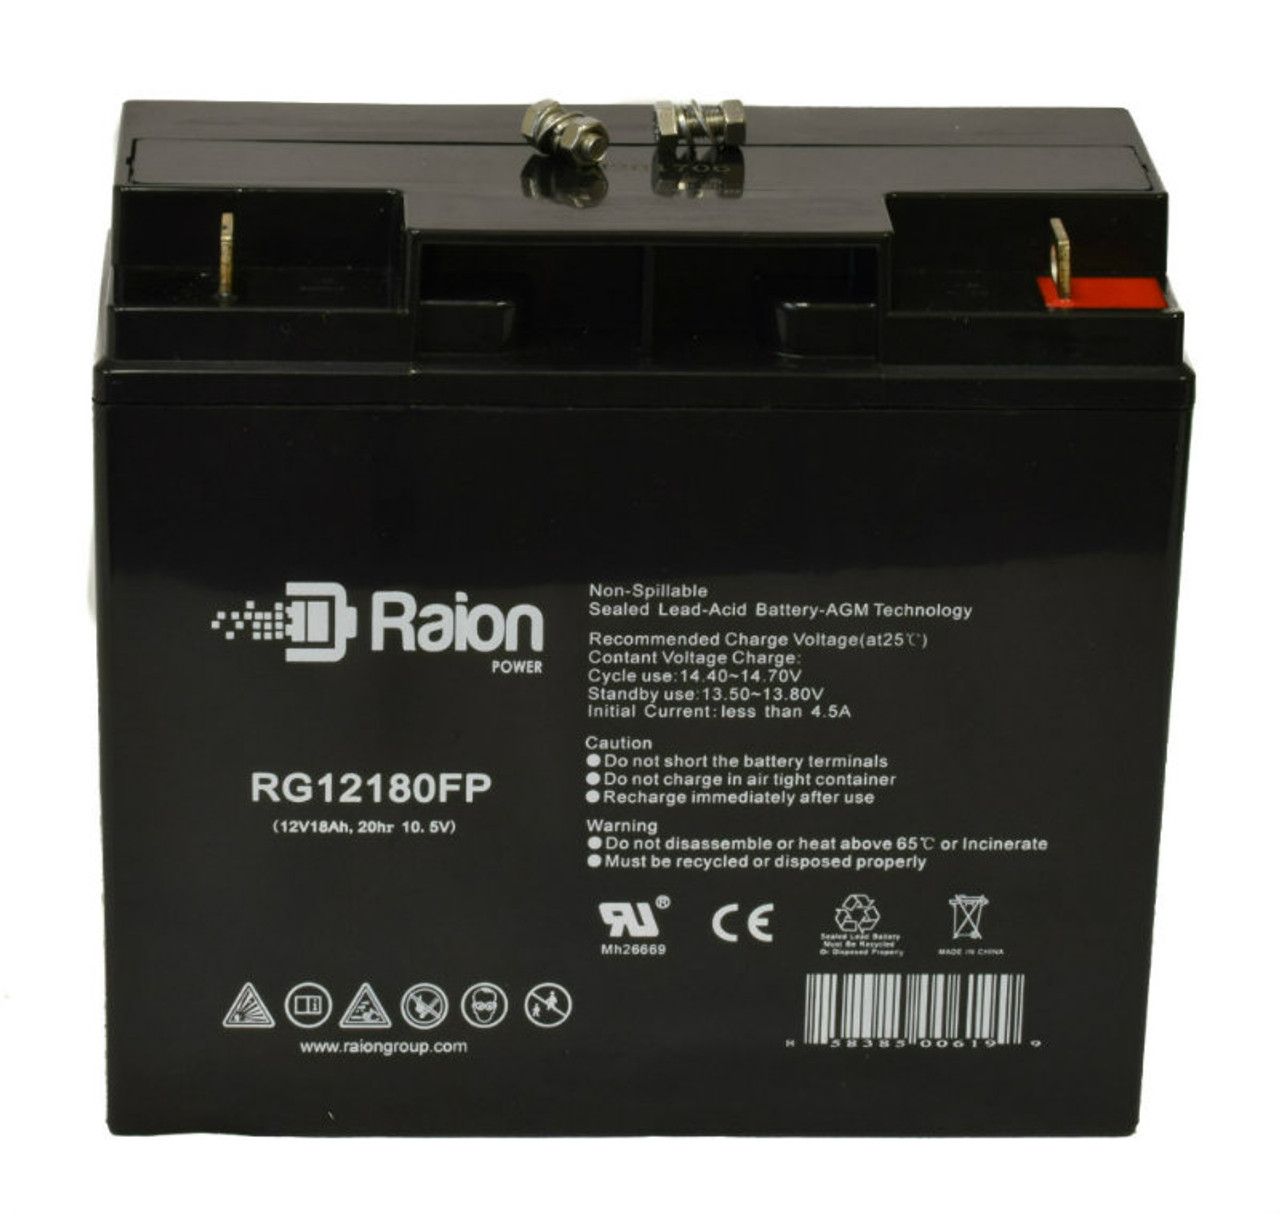 Raion Power RG12180FP 12V 18Ah Lead Acid Battery for Helios FB12-18